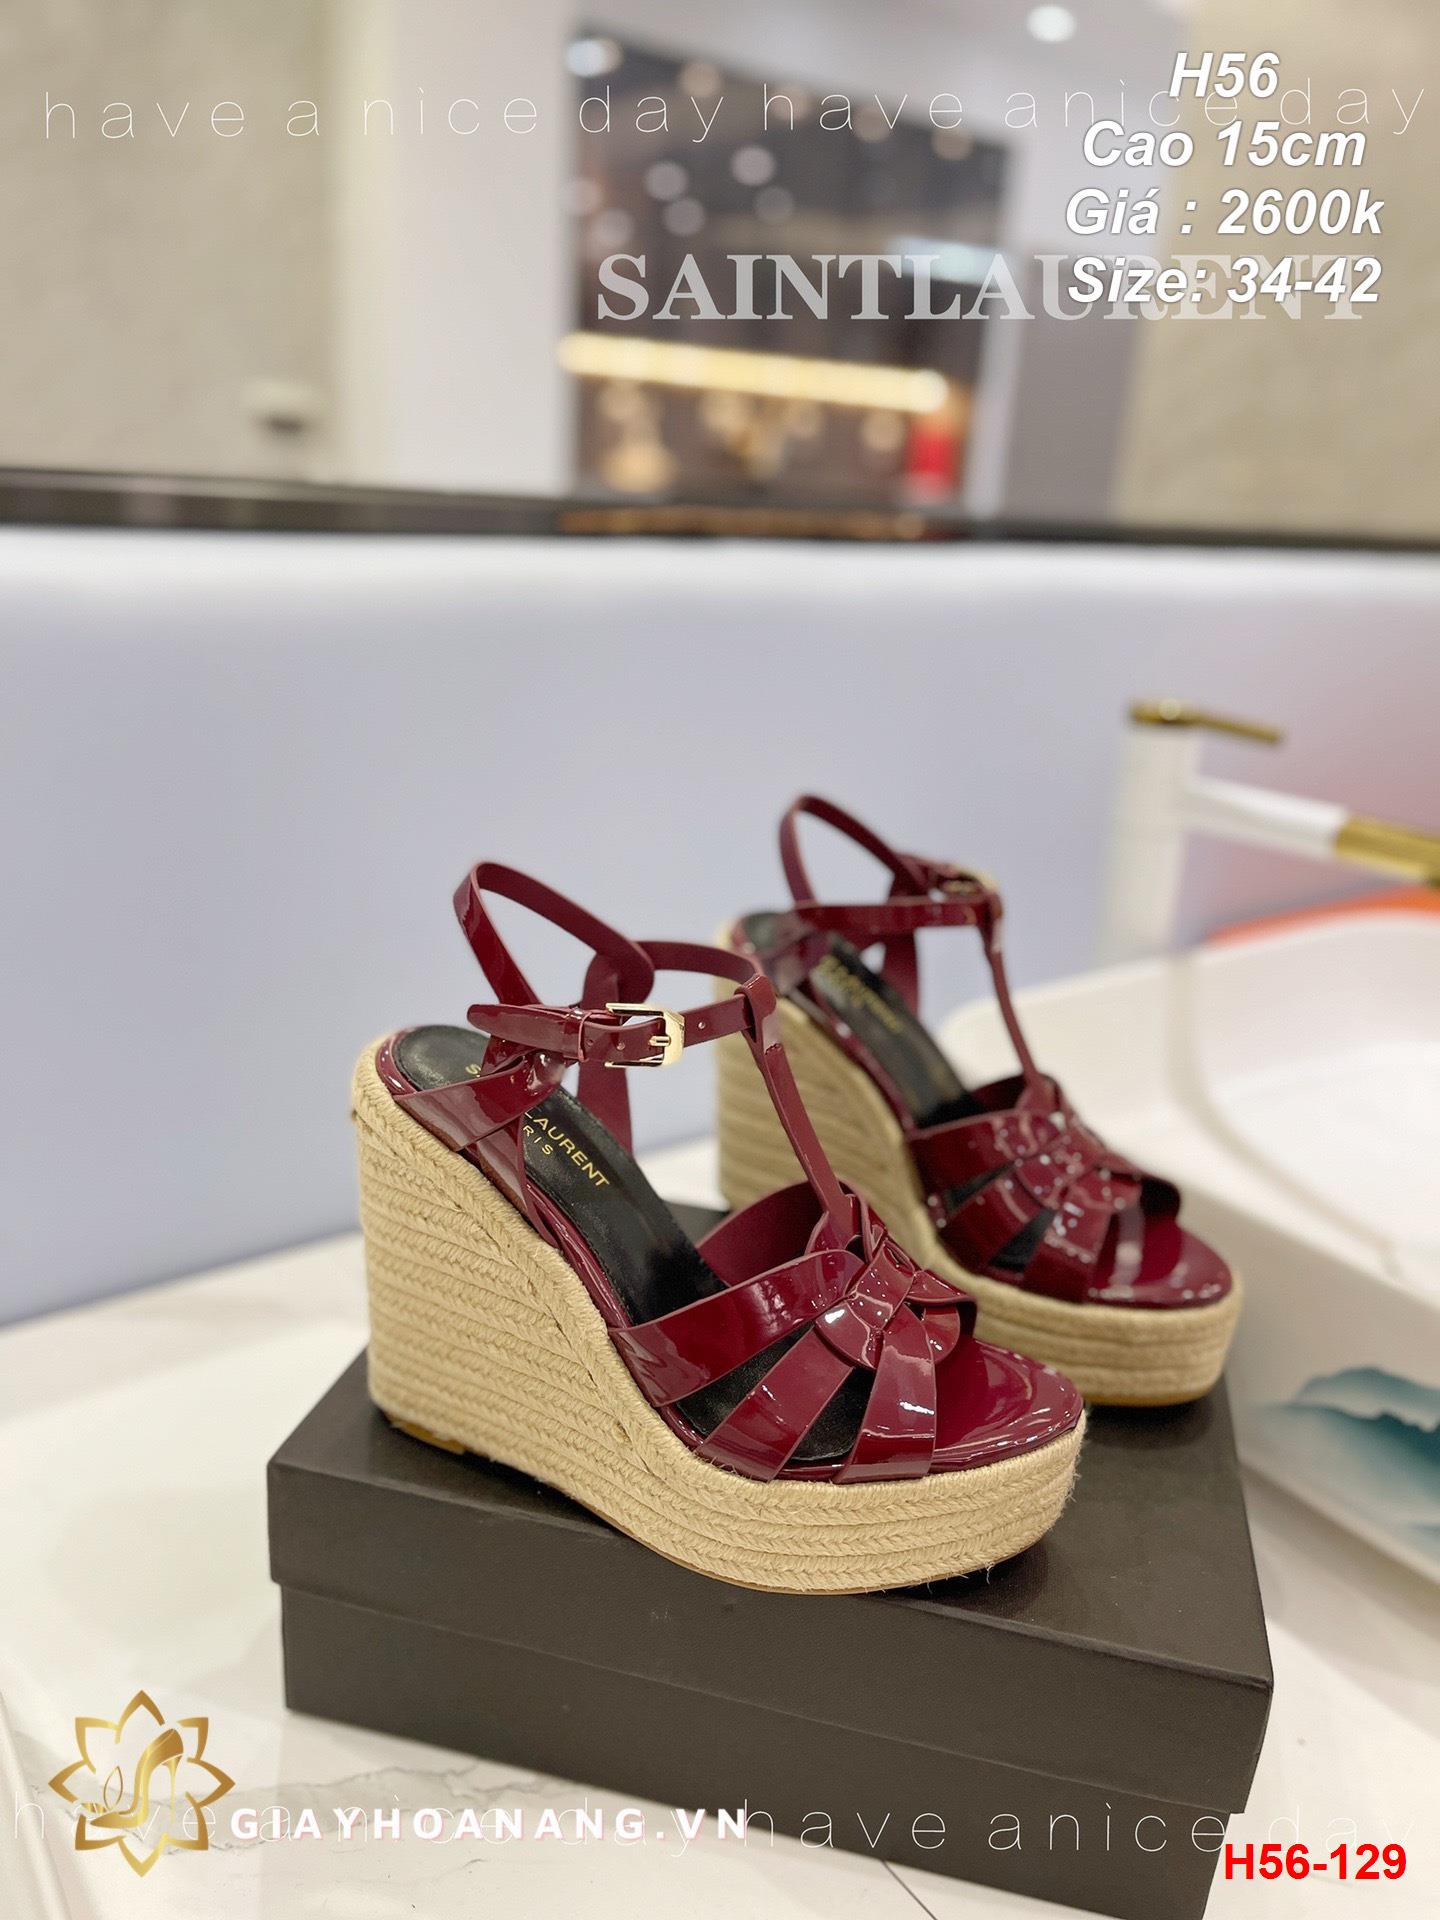 H56-129 Saint Laurent sandal cao 15cm siêu cấp